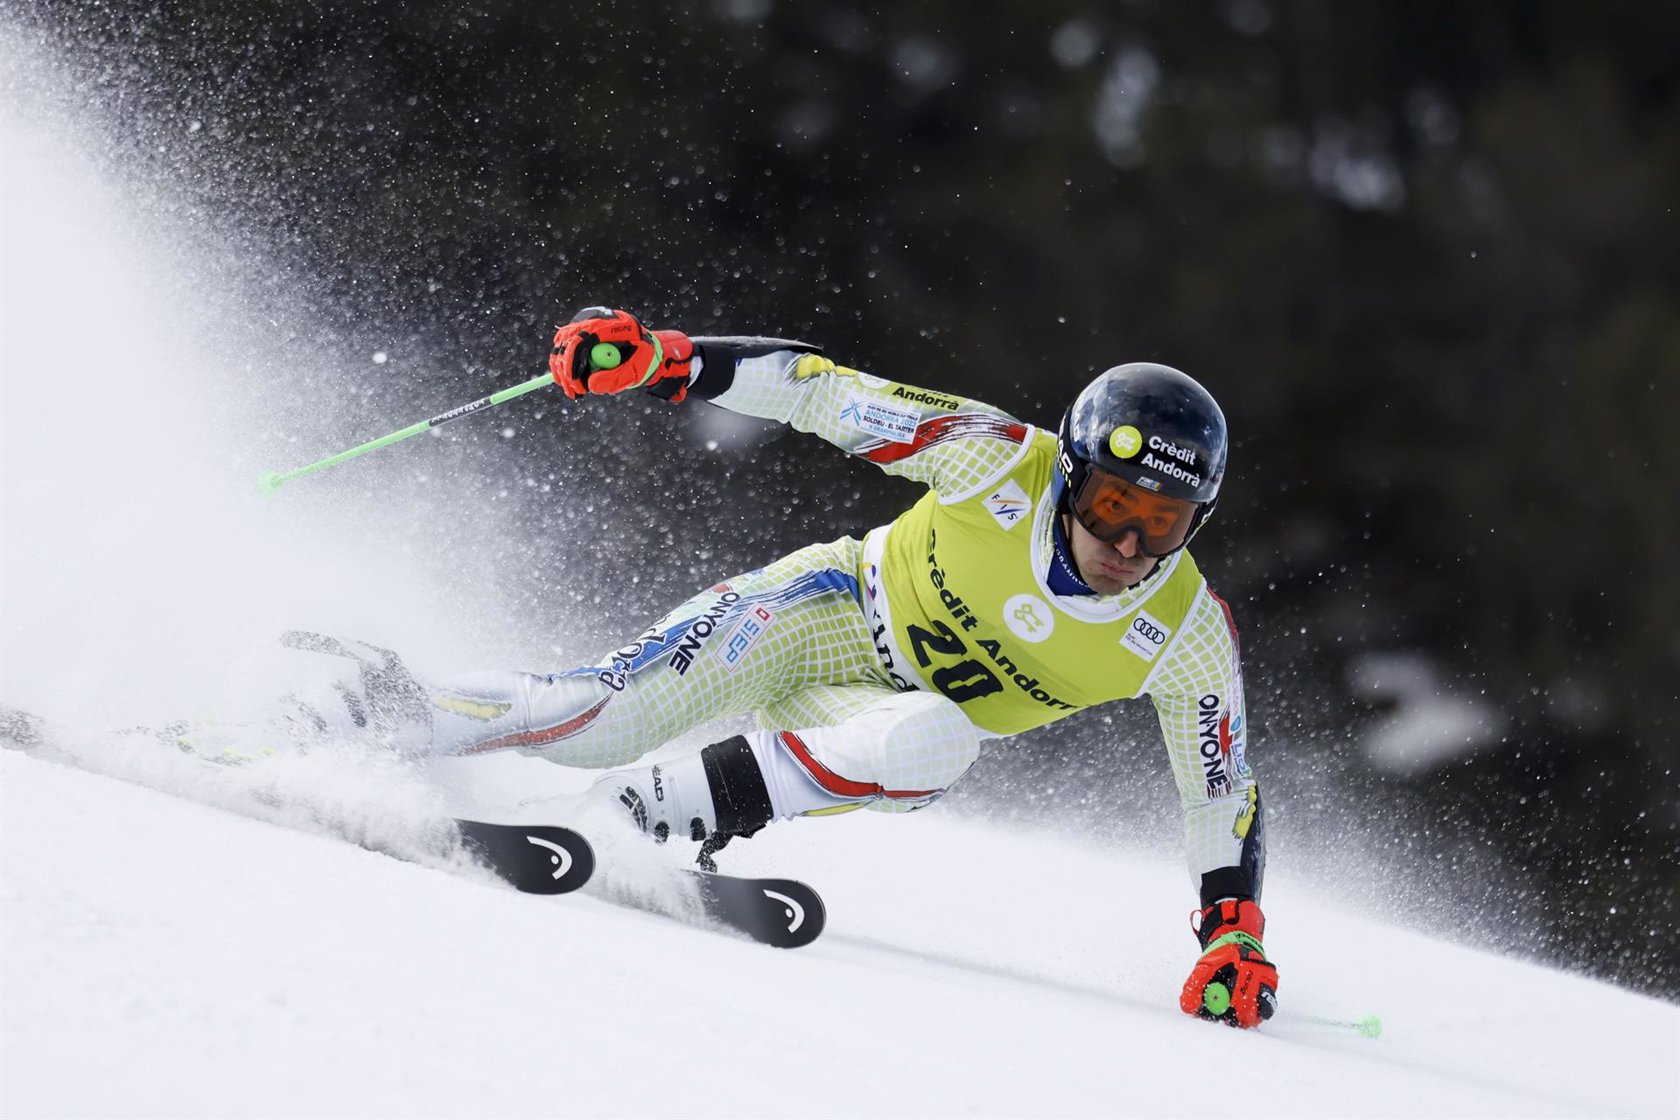 Joan Verdu del equipo de Andorra compite durante las Finales de la Copa del Mundo de Esquí Alpino Audi FIS Eslalon Gigante Masculino el 18 de marzo de 2023 en Soldeu, Andorra.